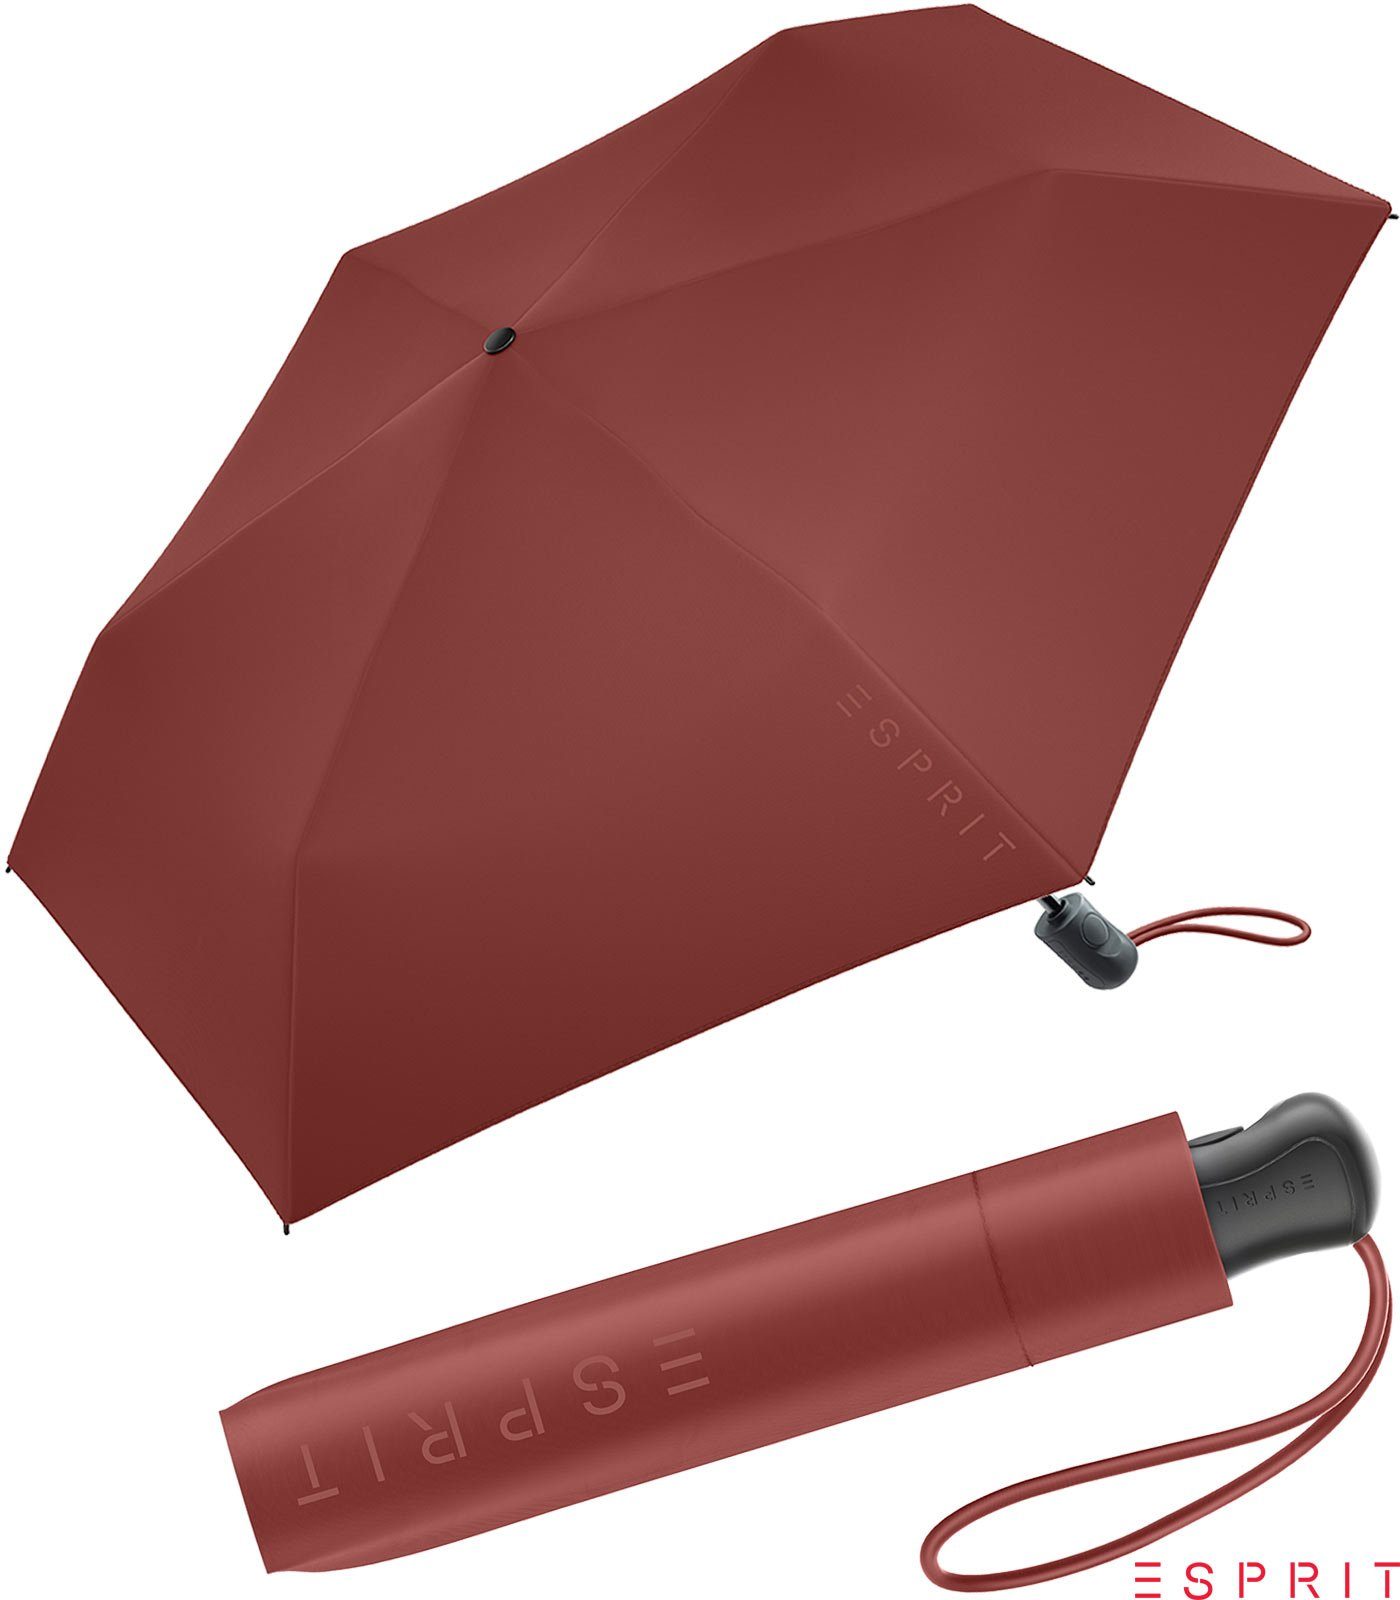 Esprit Taschenregenschirm Damen Easymatic Slimline Auf-Zu Automatik HW 2022 - russet brown, leicht, stabil, in den neuen Trendfarben braun